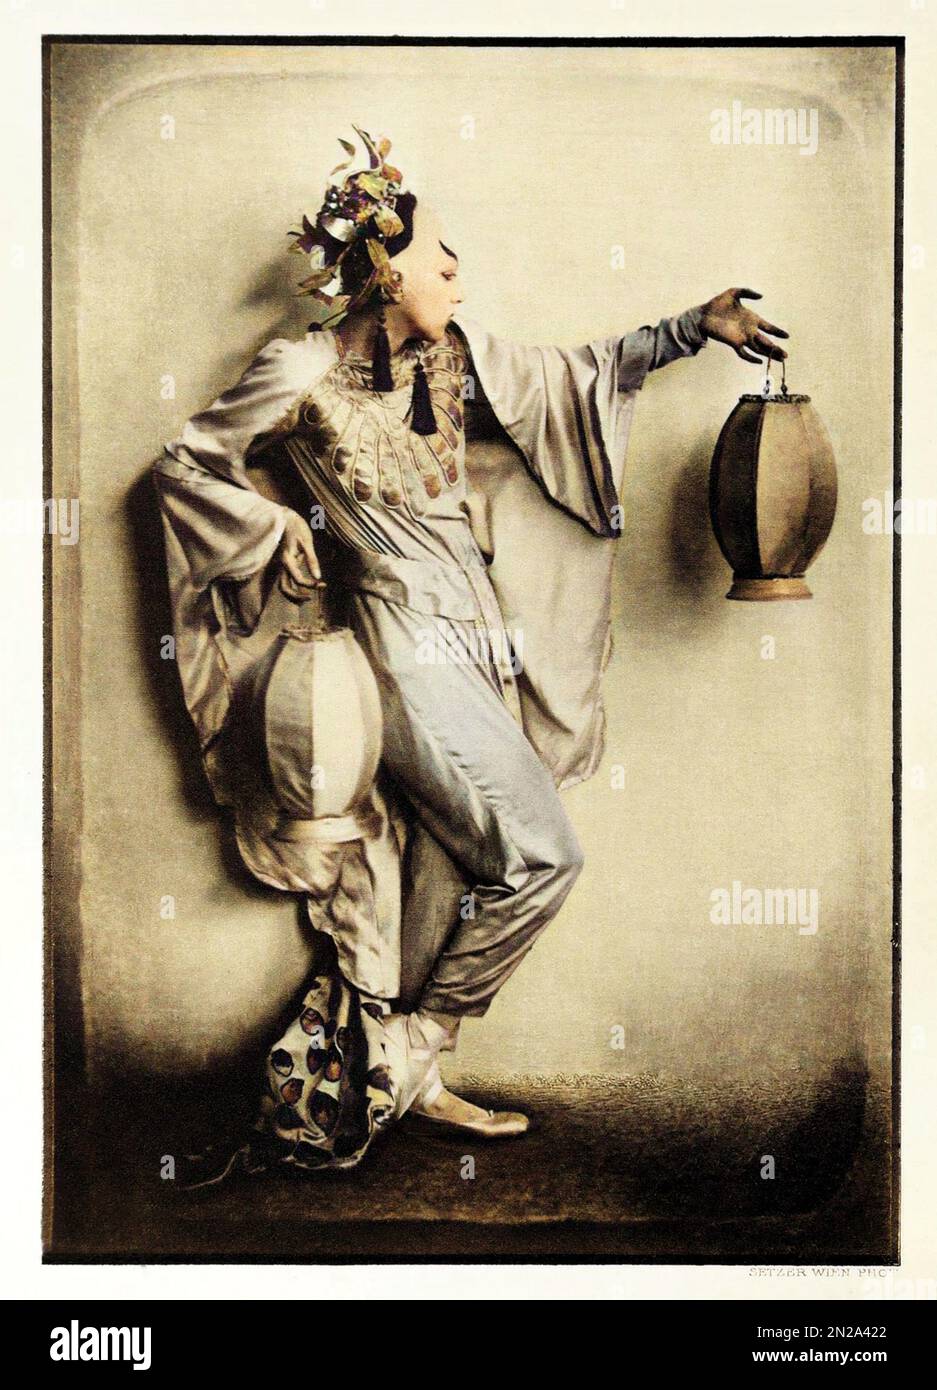 1922 Ca , Wien , ÖSTERREICH : die deutsche Tänzerin LO HESSE ( 1889 - 1983 Ca ) in der Rolle von TSCHAIKIUN . Foto: Franz Xavier SETZER ( 1886 - 1939 ). DIGITAL KOLORIERT. TANZ - DANZA - Ballerina - avanguardia - avantgarde - BALLETTO - TEATRO - AVANGUARDIA - Theater - moderno - MODERNISMO - MODERNISMUS - Kostüm di scena - Bühnenkostüm - ORIENTALE - ORIENTALISTA - ORIENTALIST - EXOTISCH - ESOTICO - EXOTISMUS - ESOTISMO - MYSTERY - ENIGMA - ENIGMATICO - ENIGMATICA - GESCHICHTE - FOTOSTORICHE - REPUBBLICA DI WEIMAR - KABARETT - CAMP IDOL - ANNI FOLLI - ANNI VENTI - JAZZ AGE - 1920ER - '2 Stockfoto